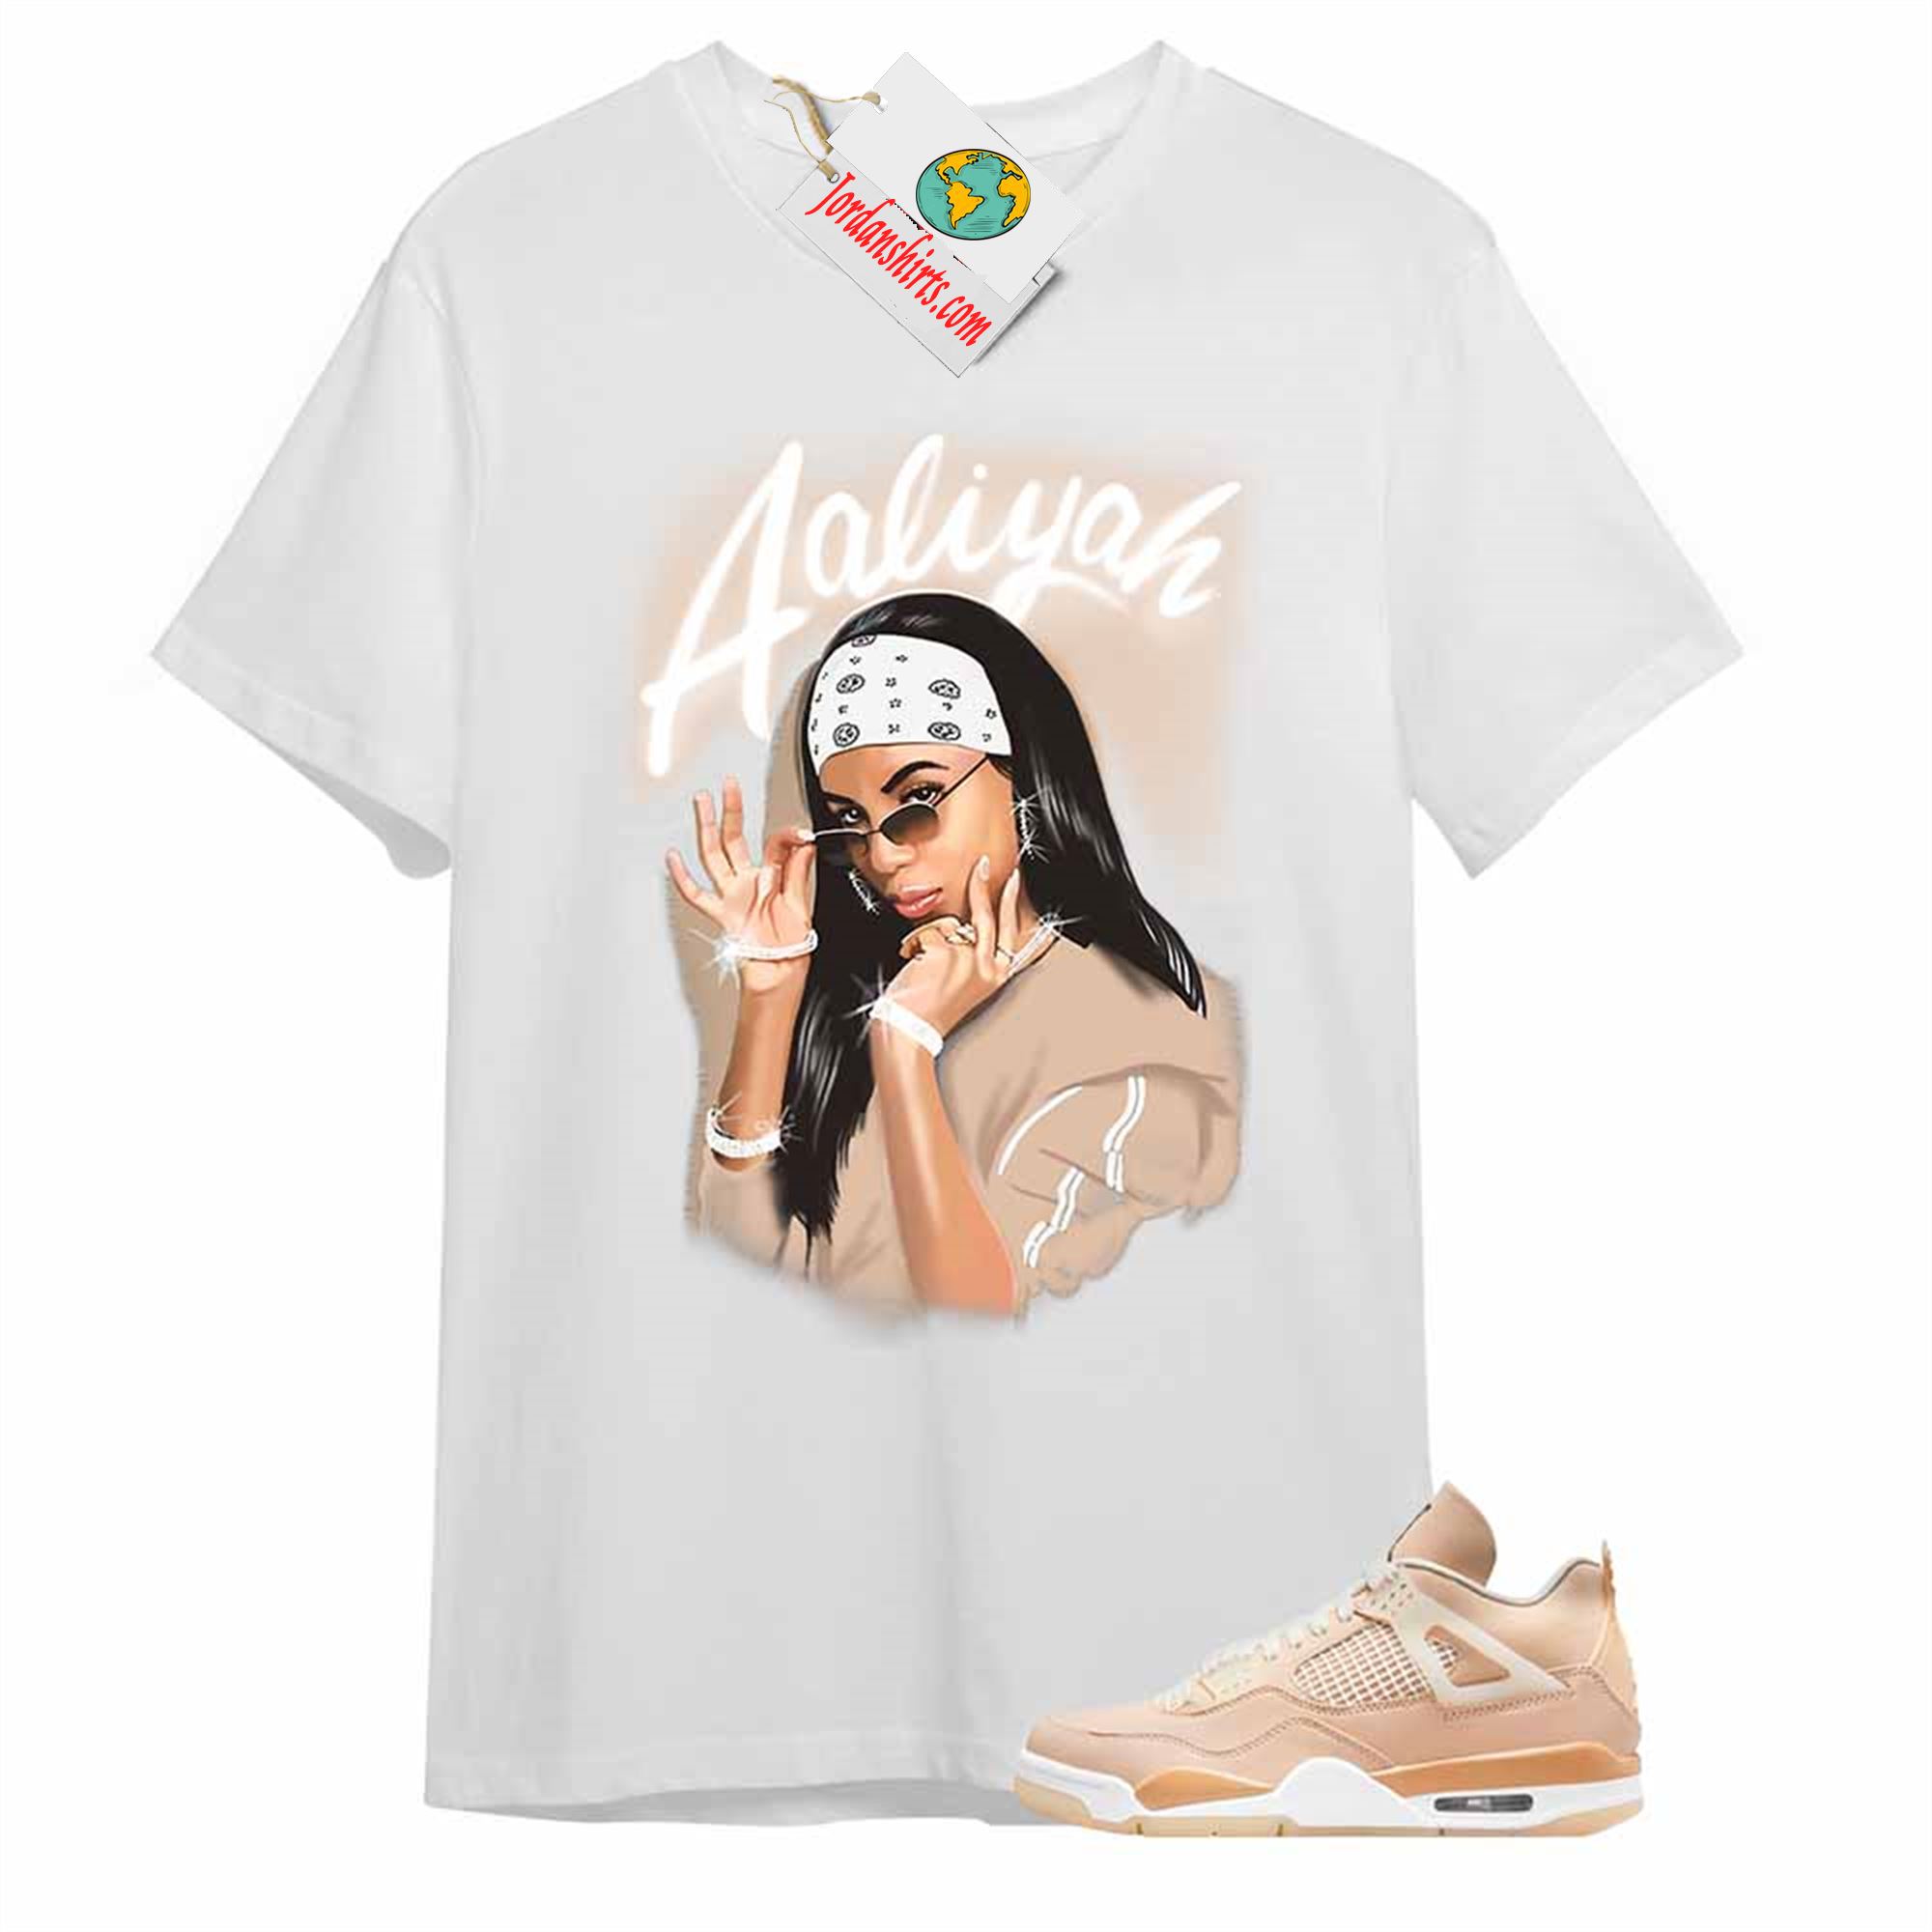 Jordan 4 Shirt, Aaliyah Airbrush White T-shirt Air Jordan 4 Shimmer 4s Size Up To 5xl